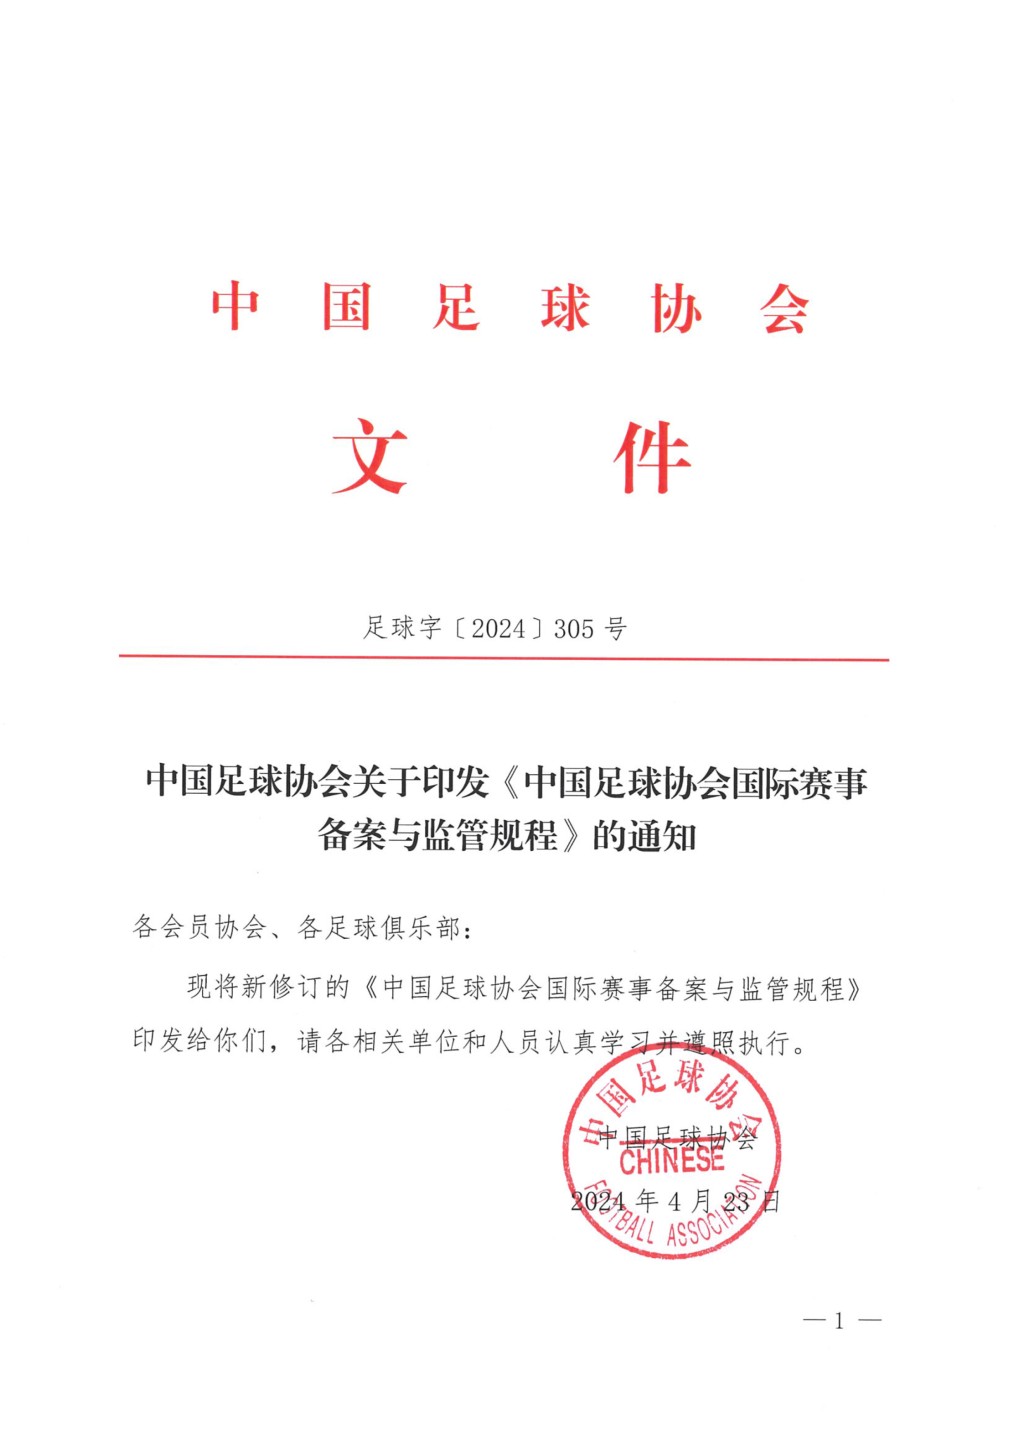 中國足協23日發布「中國足球協會國際賽事備案與監管規程」，網民稱為「美斯條款」。